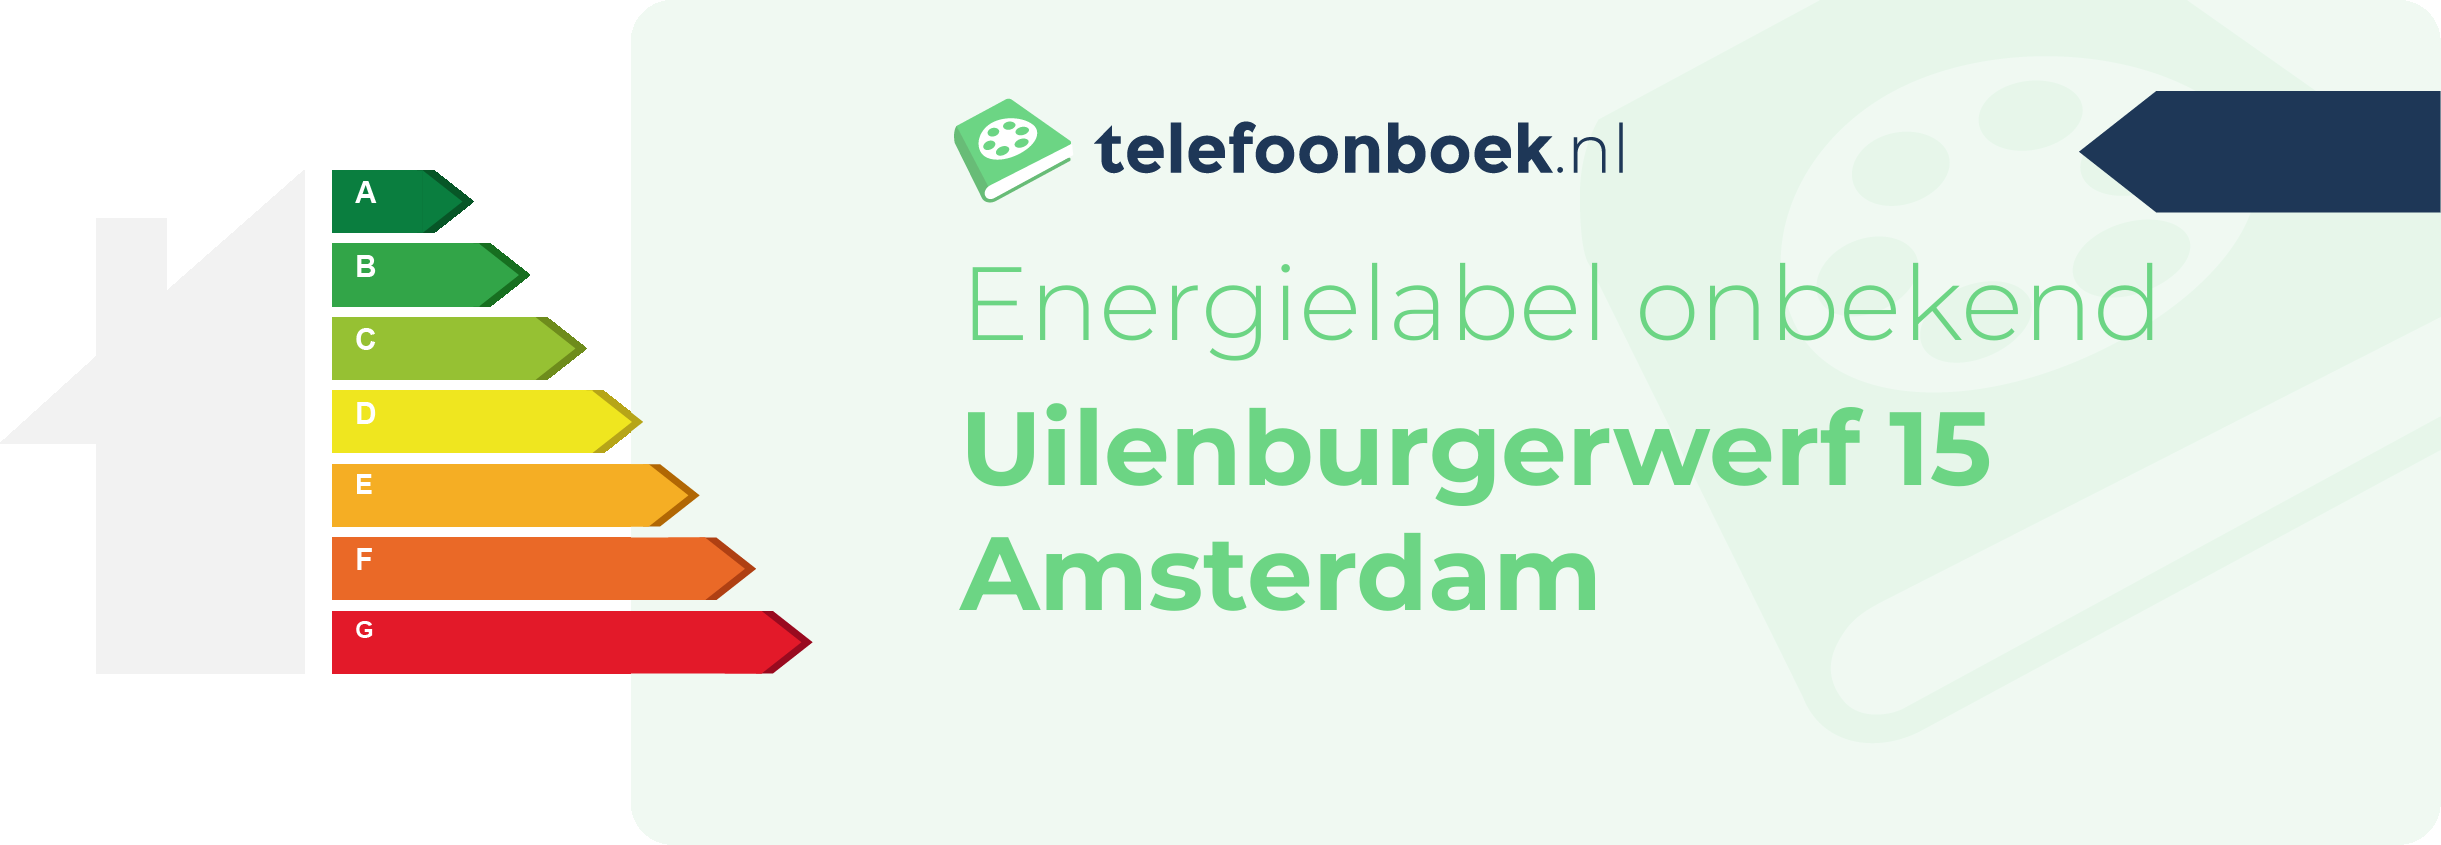 Energielabel Uilenburgerwerf 15 Amsterdam